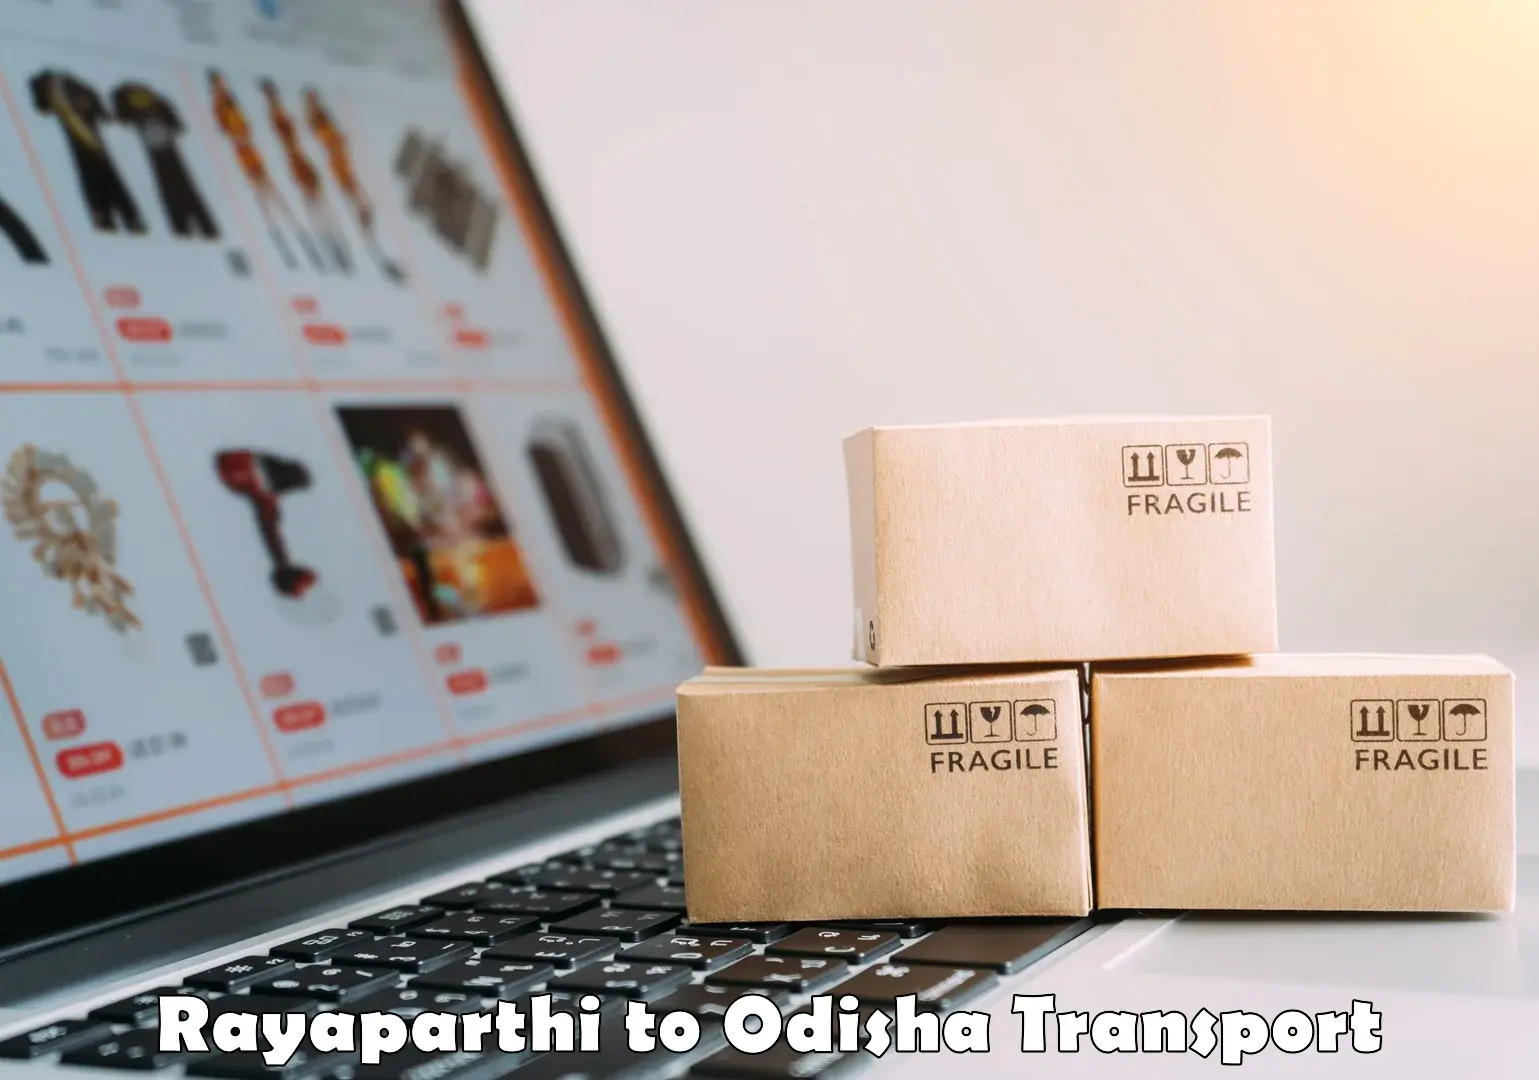 Domestic goods transportation services Rayaparthi to Lamtaput